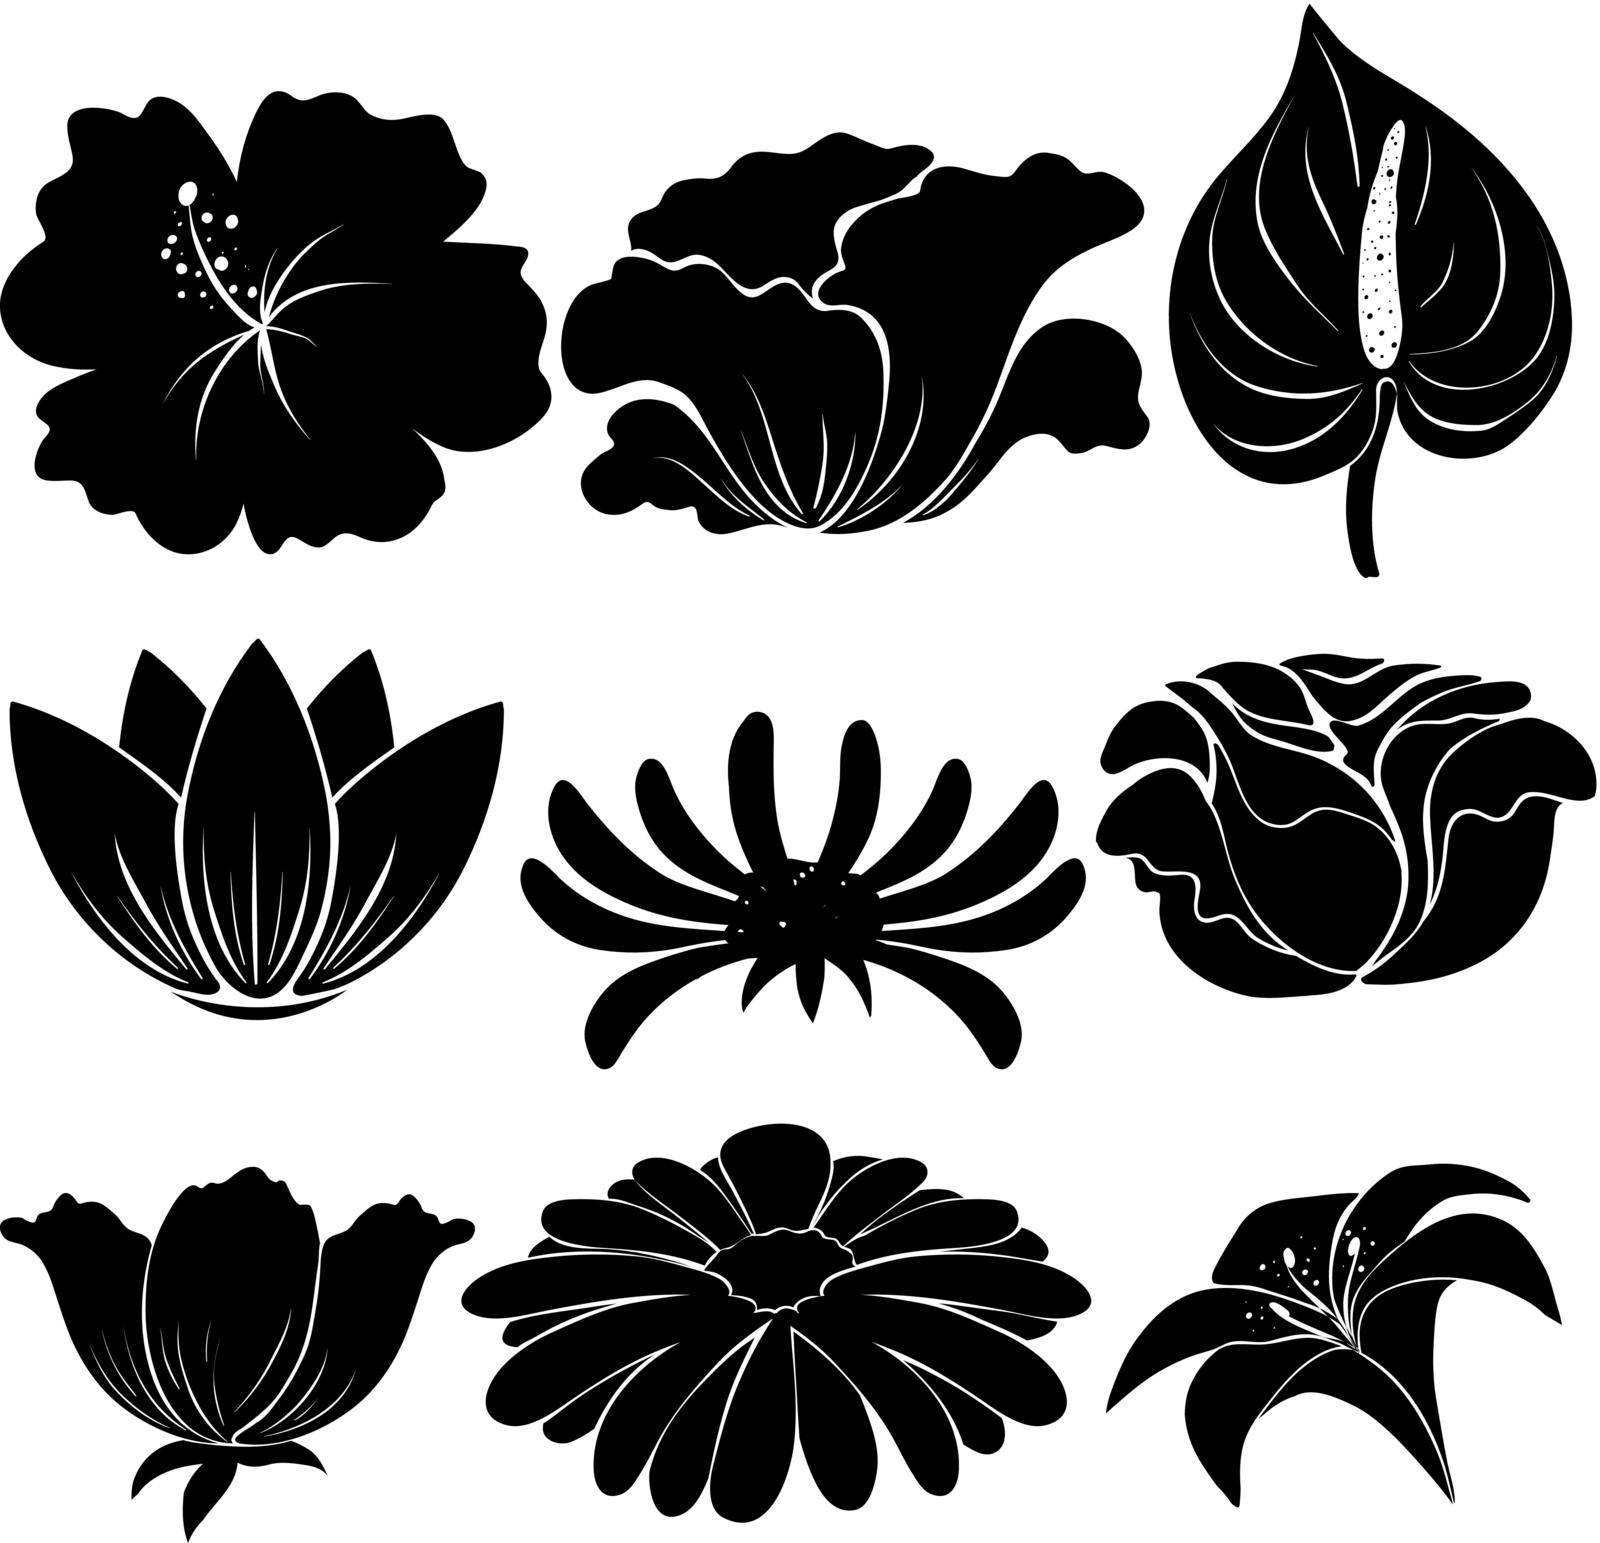 Black plants by iimages